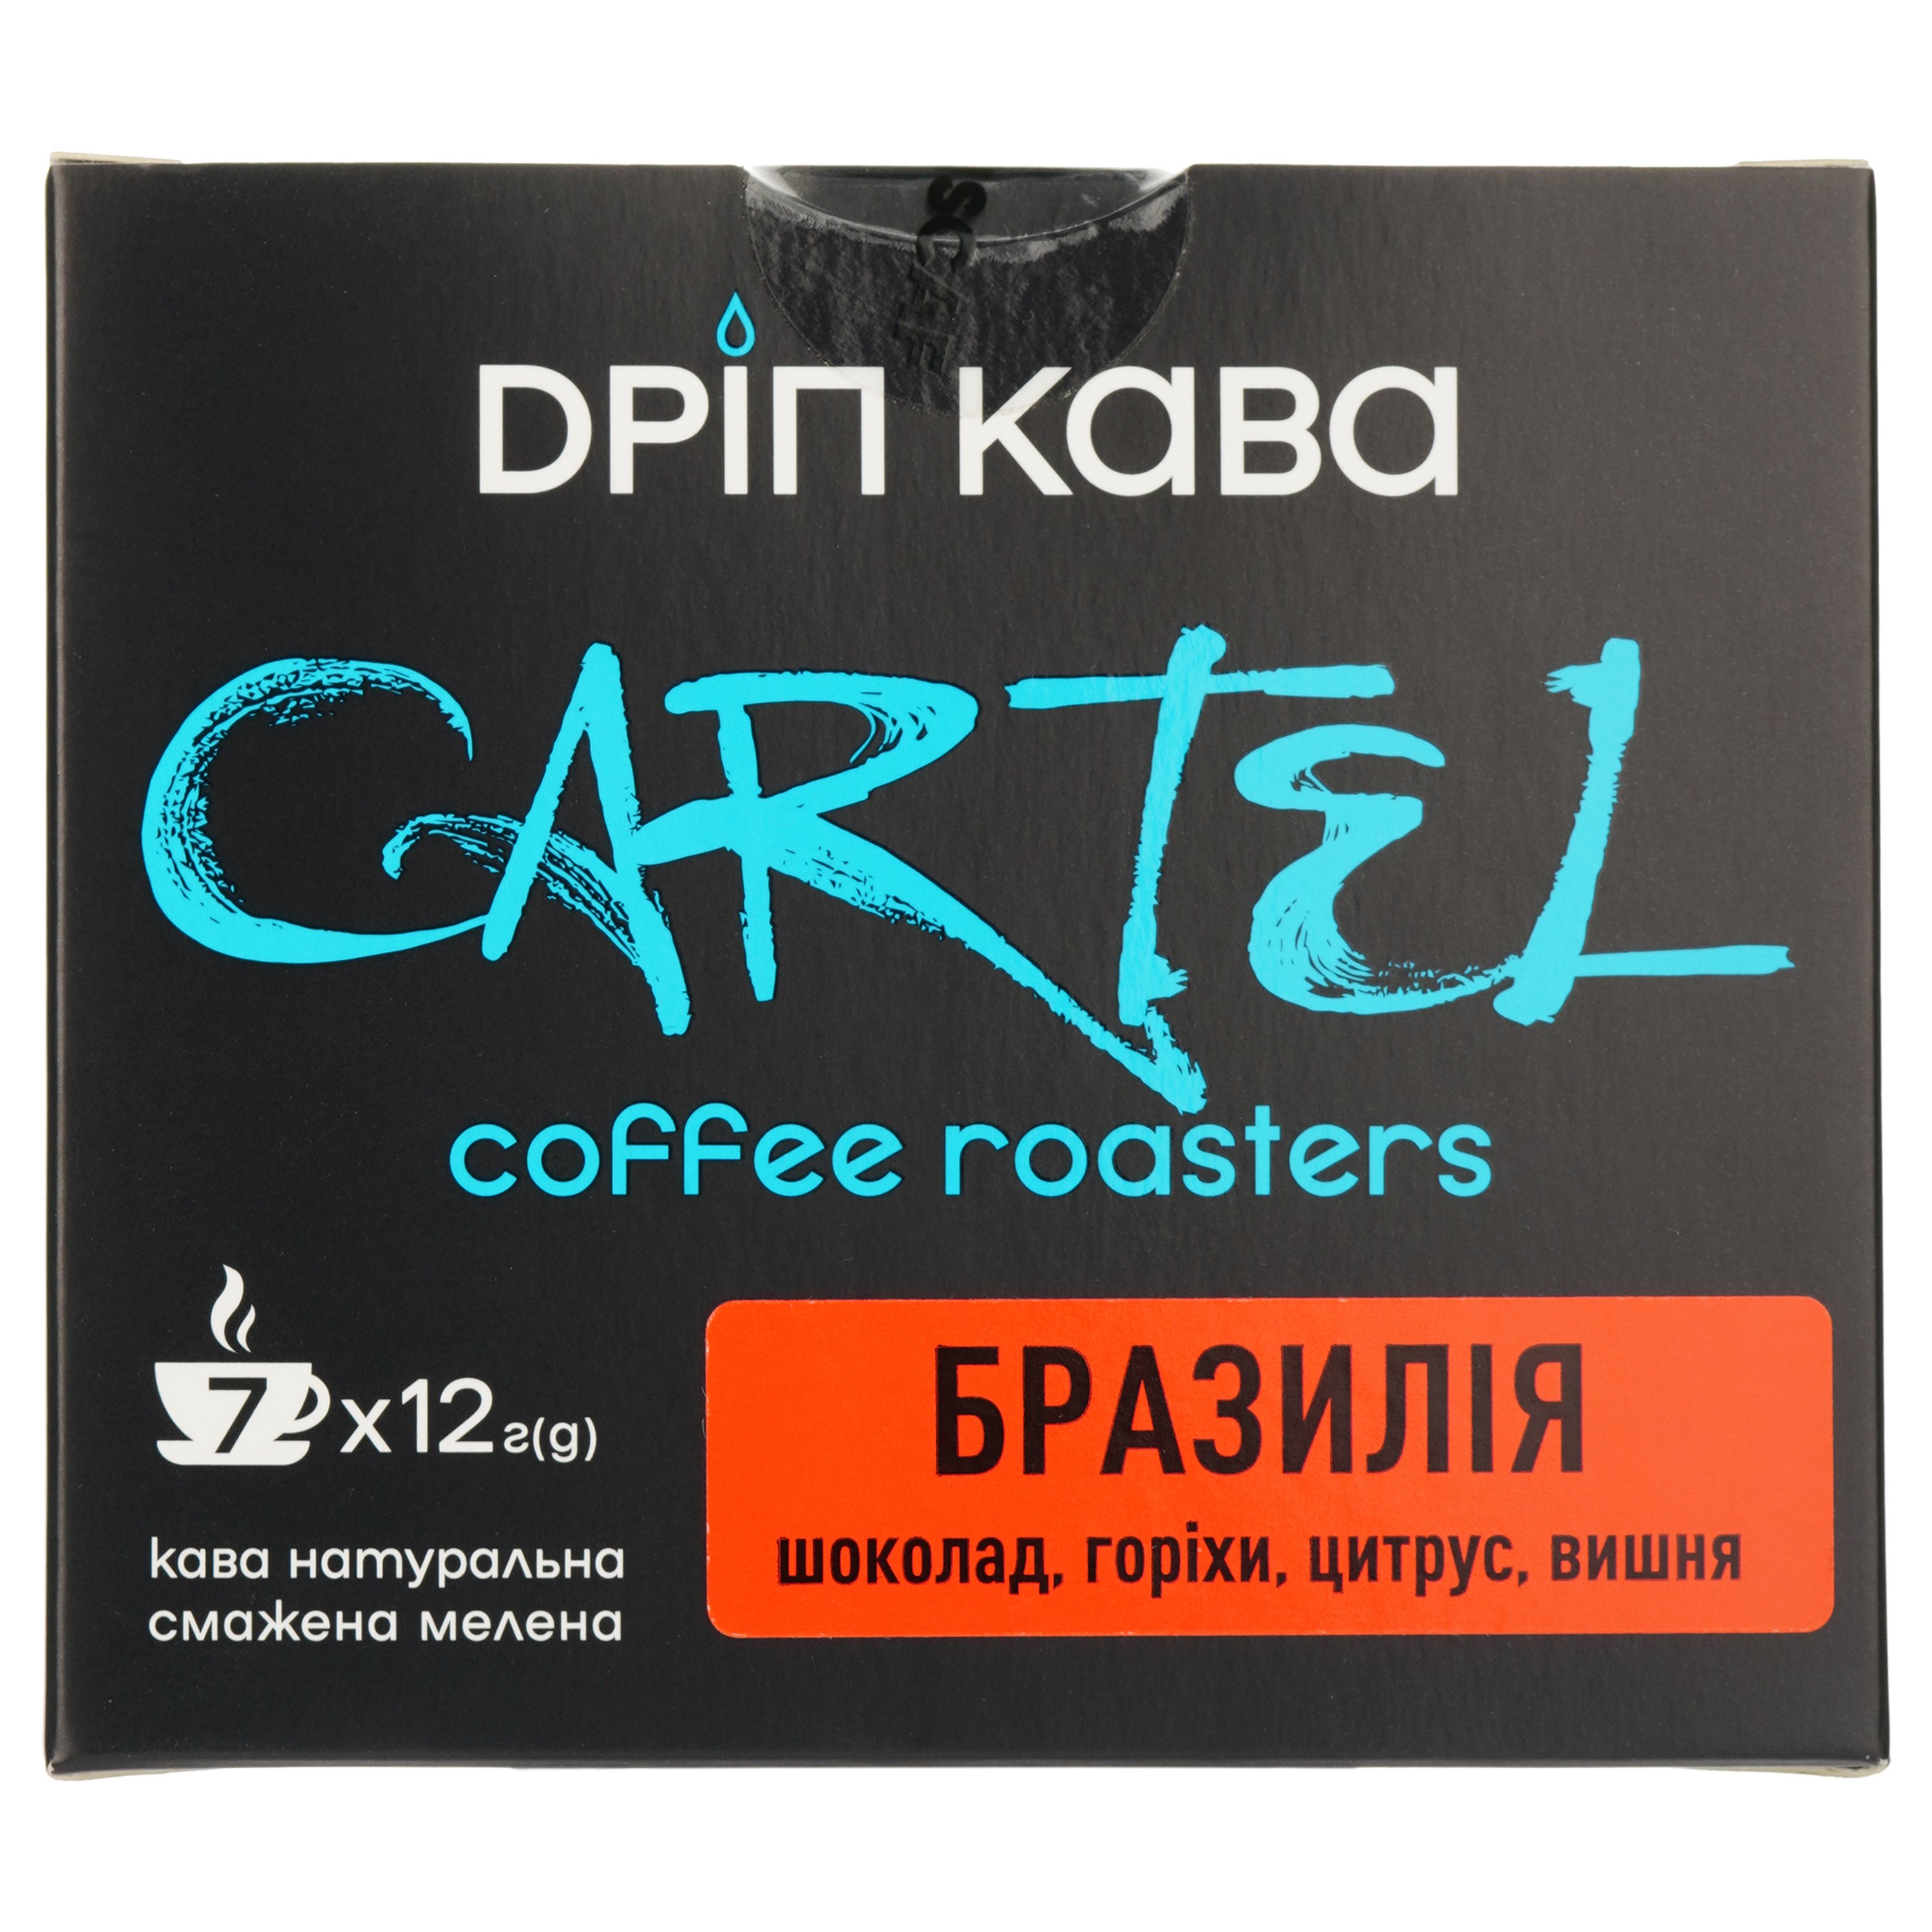 Дріп-кава Cartel Бразилія 84 г (7 шт. по 12 г) - фото 2